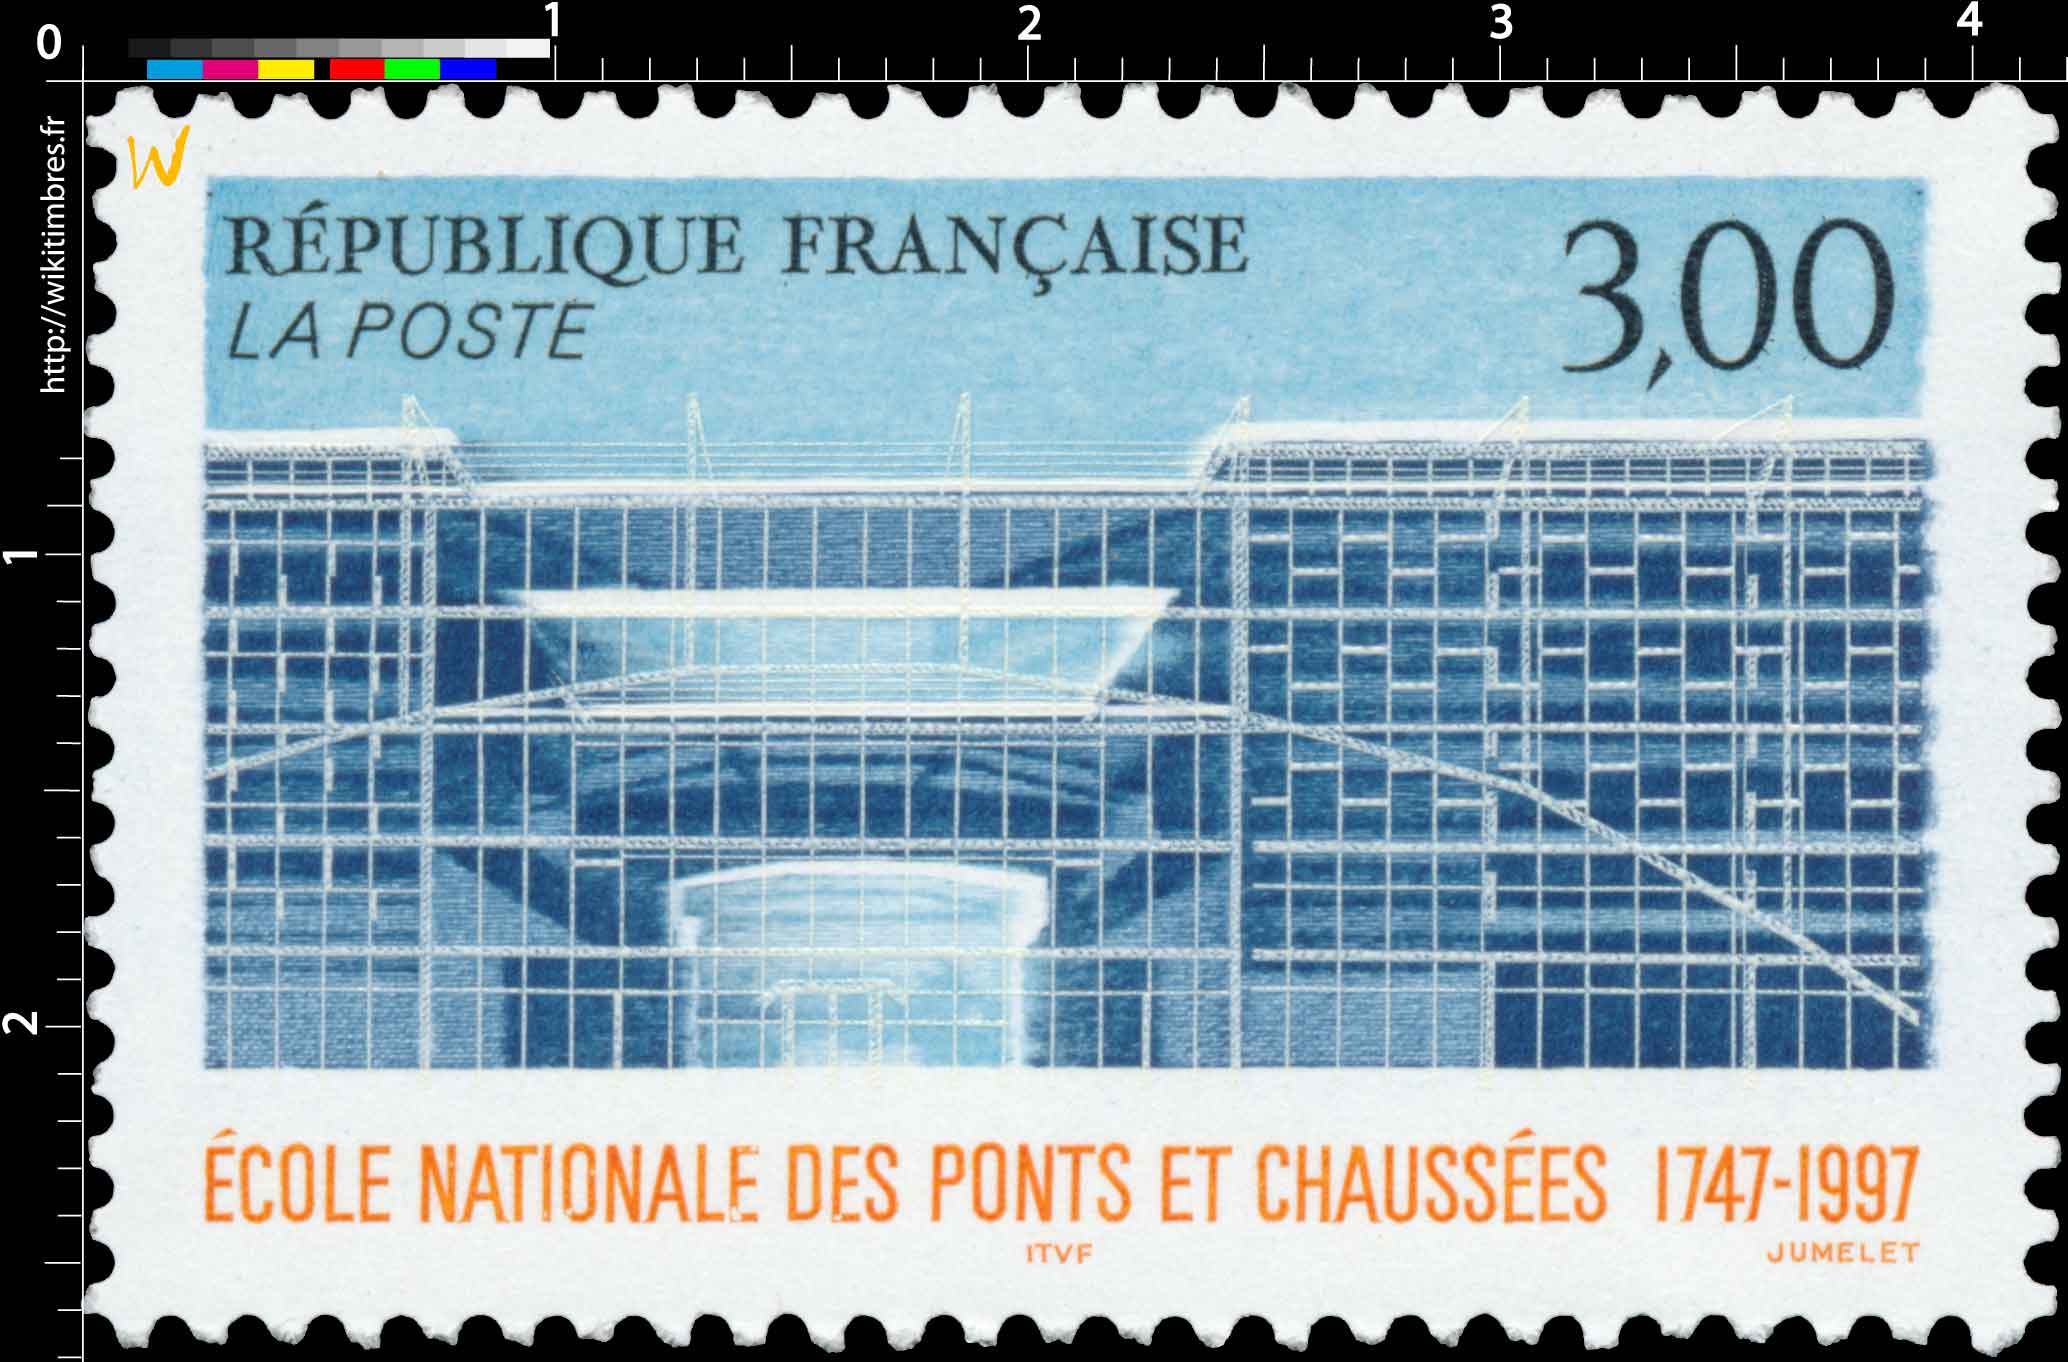 ÉCOLE NATIONALE DES PONTS ET CHAUSSÉES 1747-1997